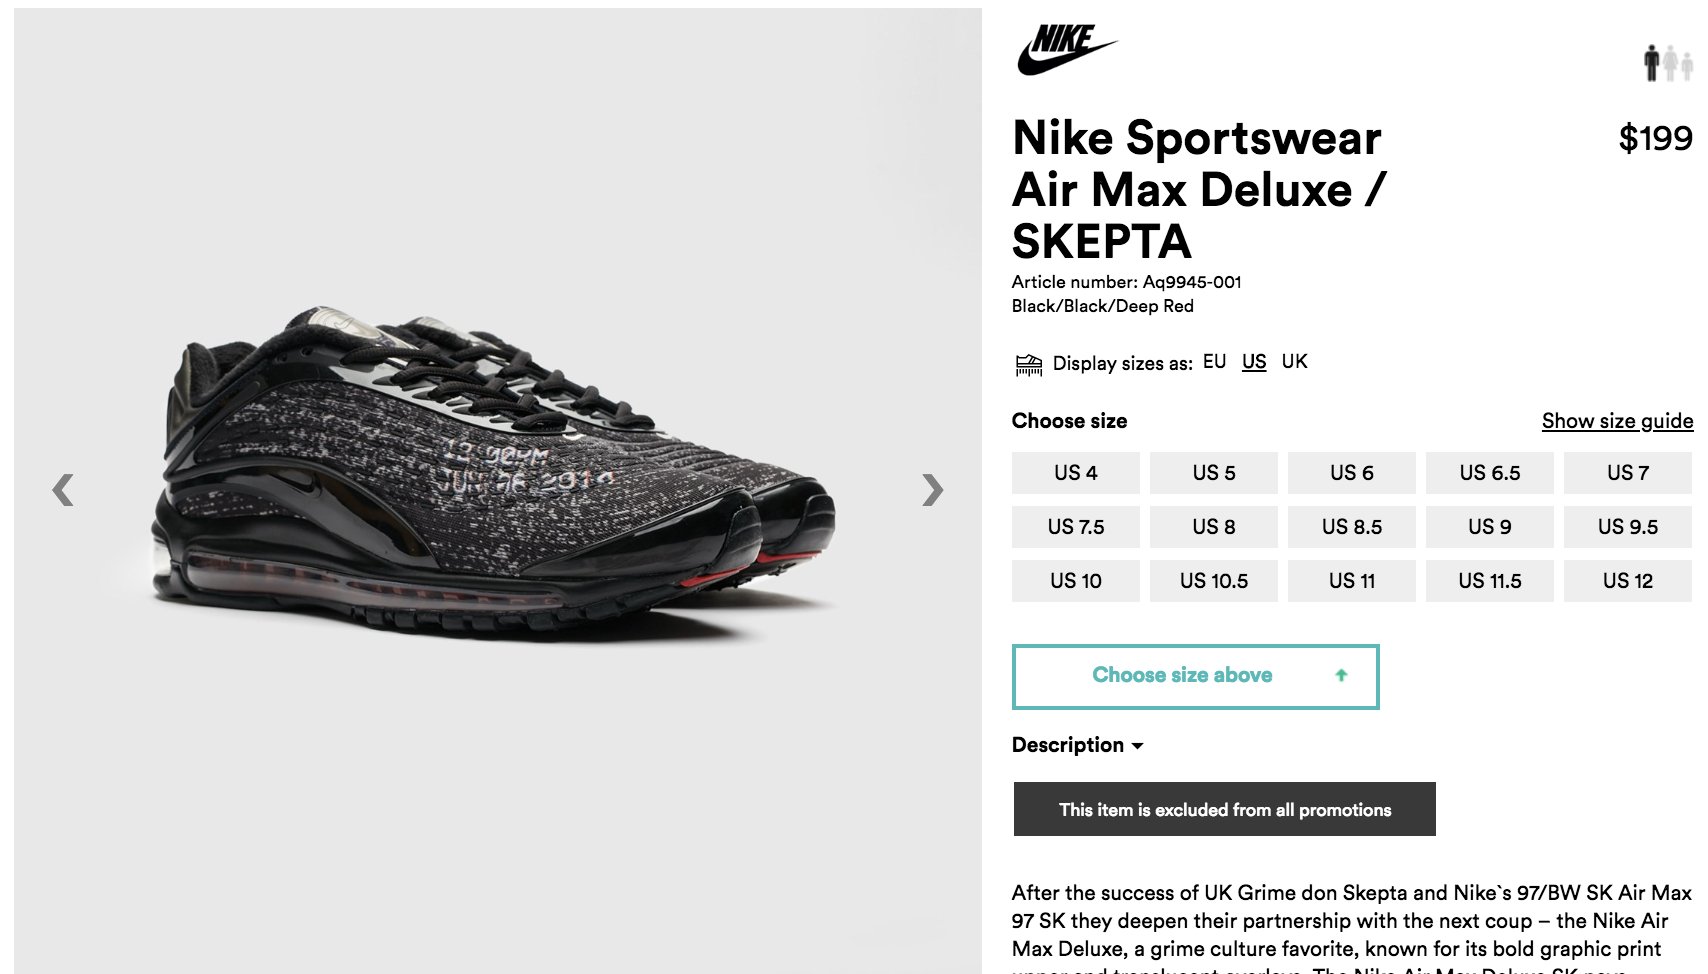 SOLELINKS on "#RESTOCK Skepta x Nike Air Deluxe =&gt; https://t.co/ShRvUYOr5M https://t.co/kt4PW23IQ3" /